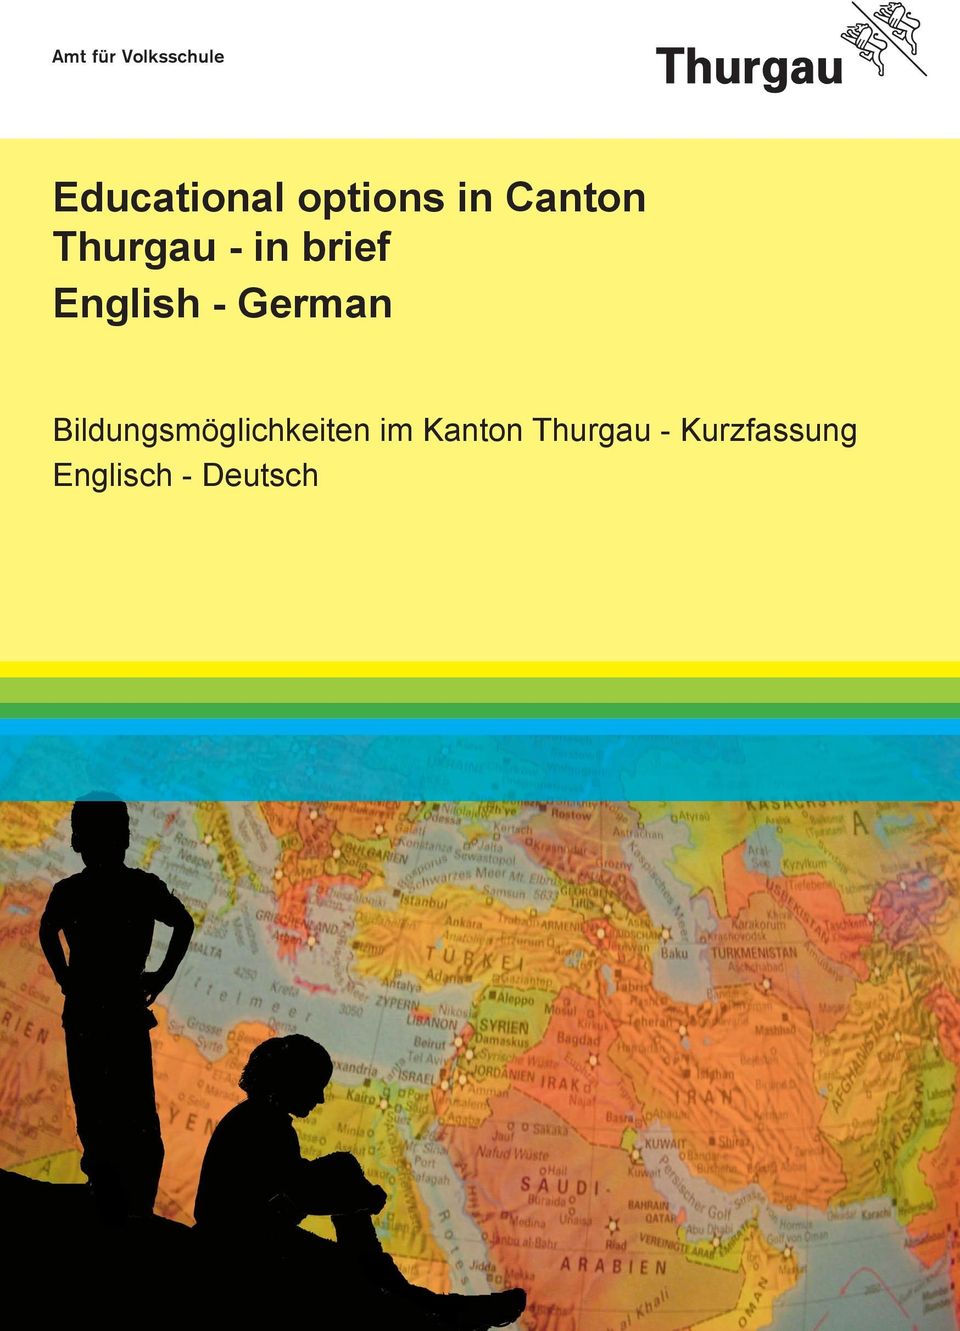 German Bildungsmöglichkeiten im Kanton